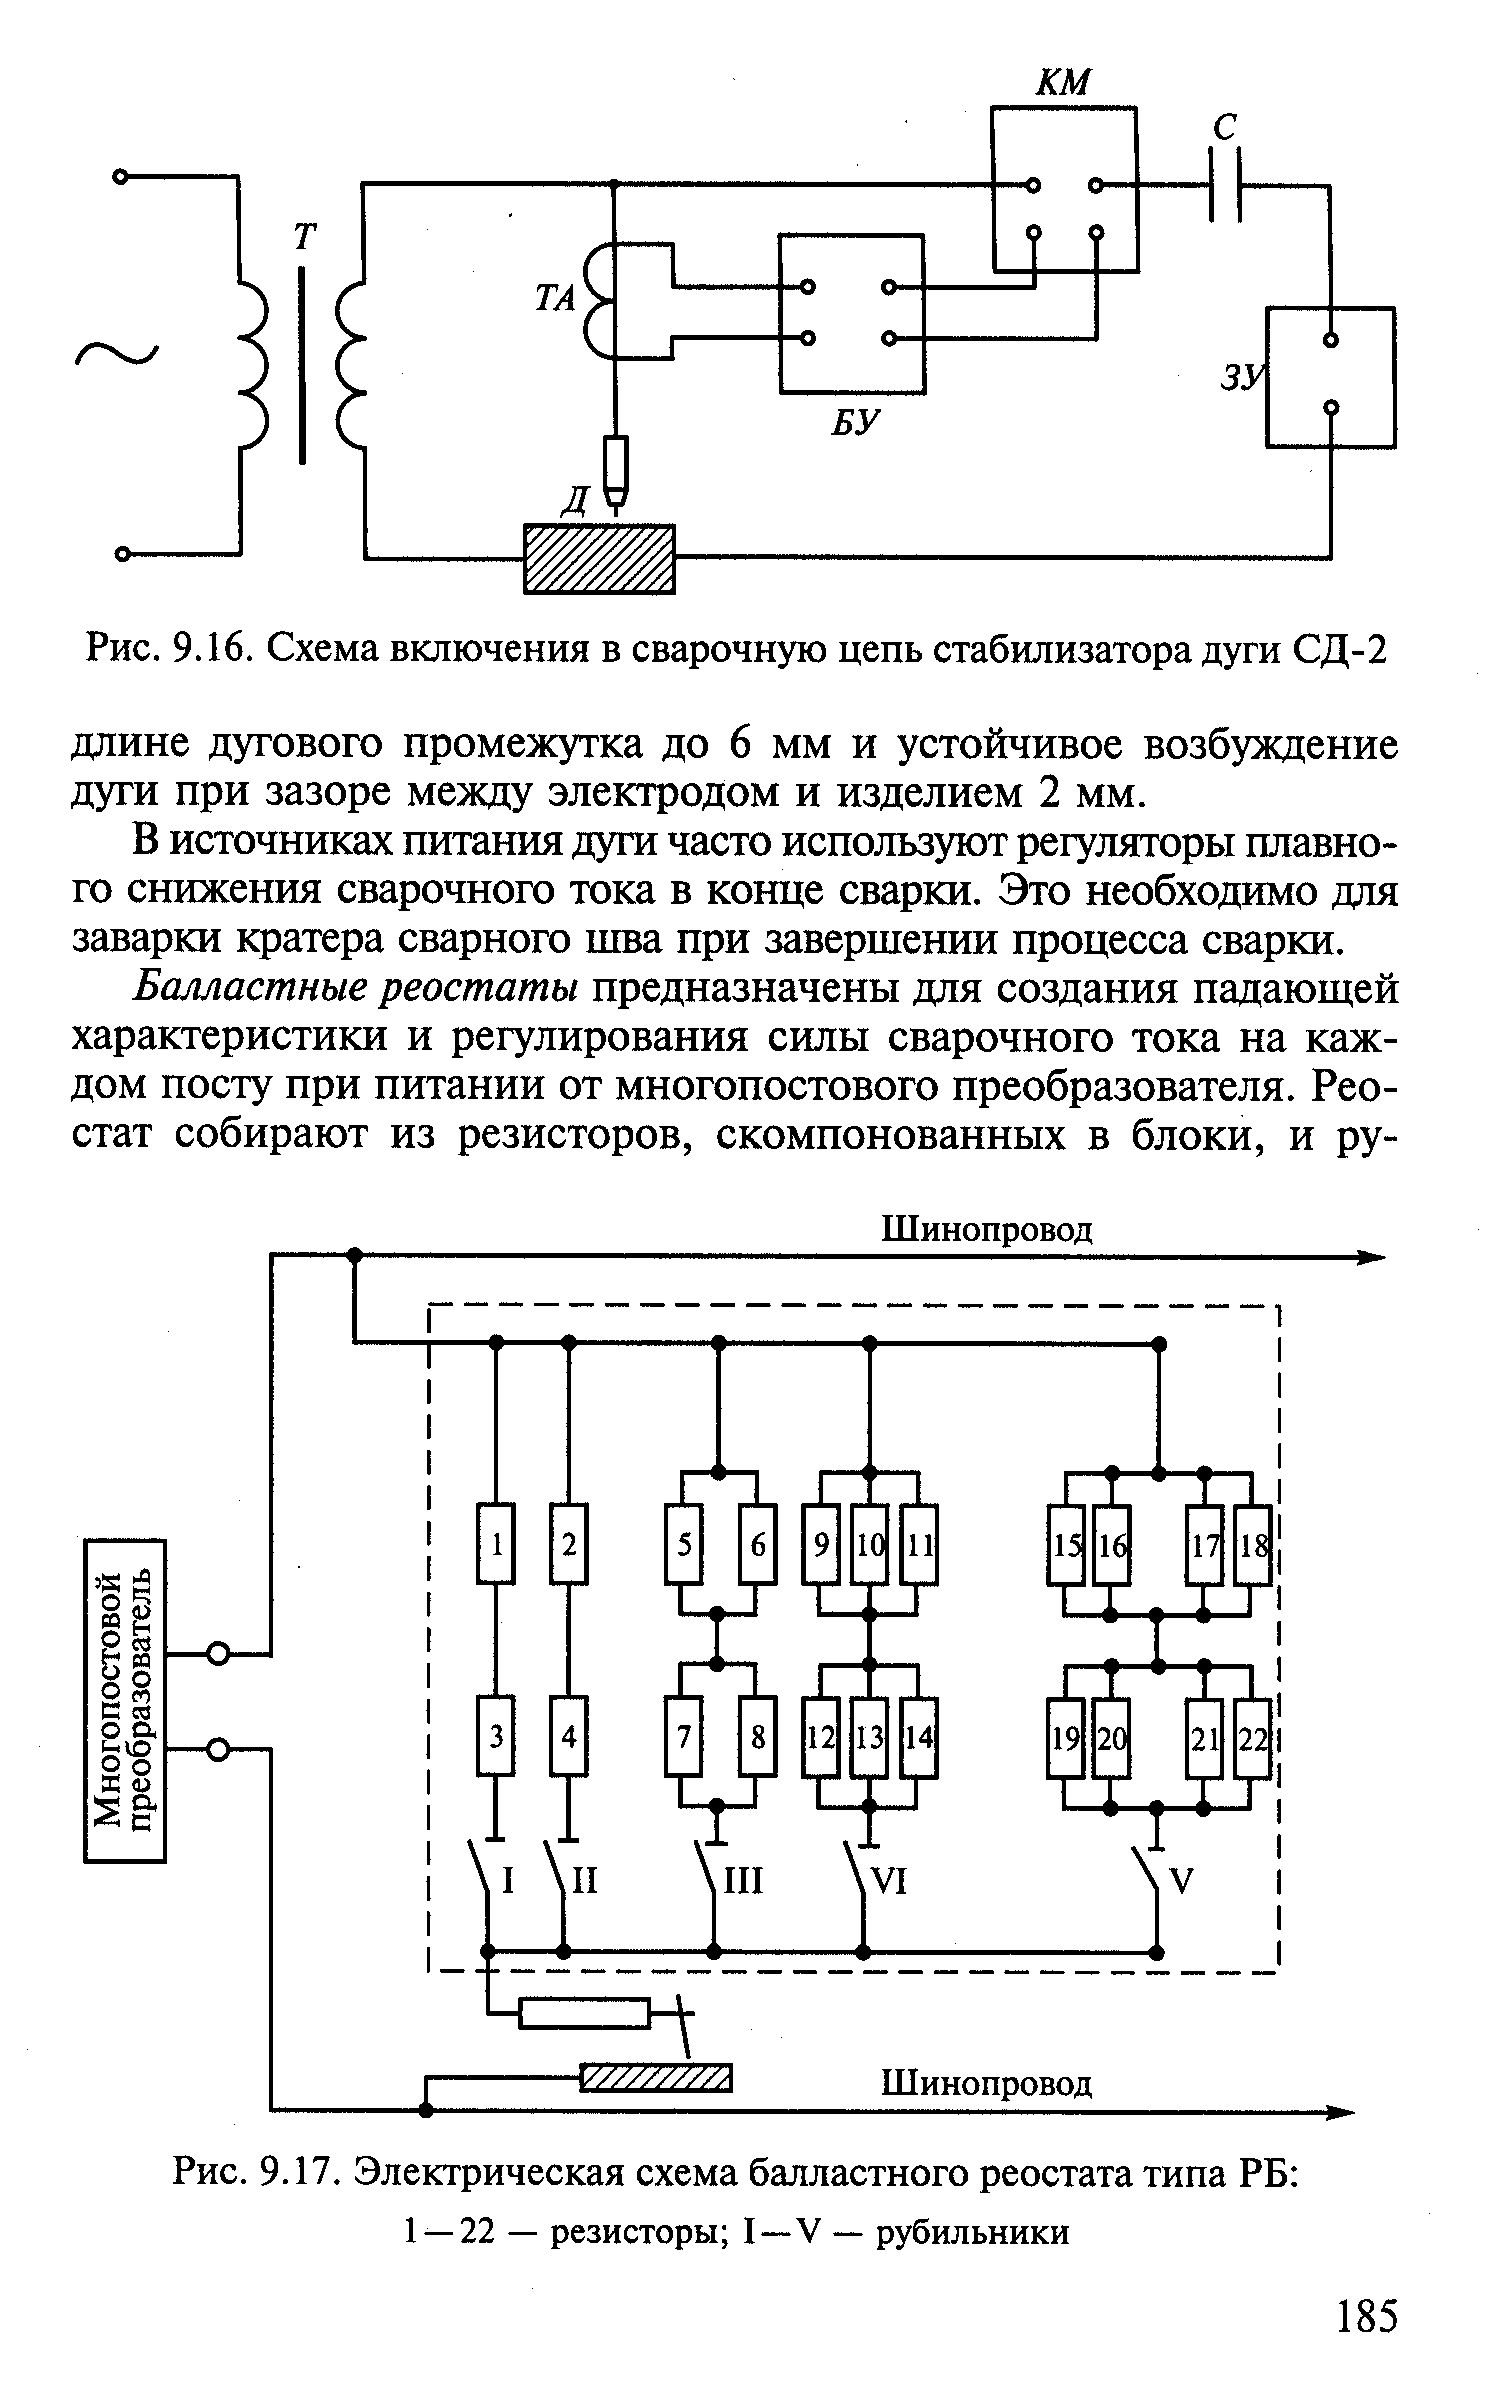 Балластный реостат рб-302,рб-306: технические характеристики, схемы